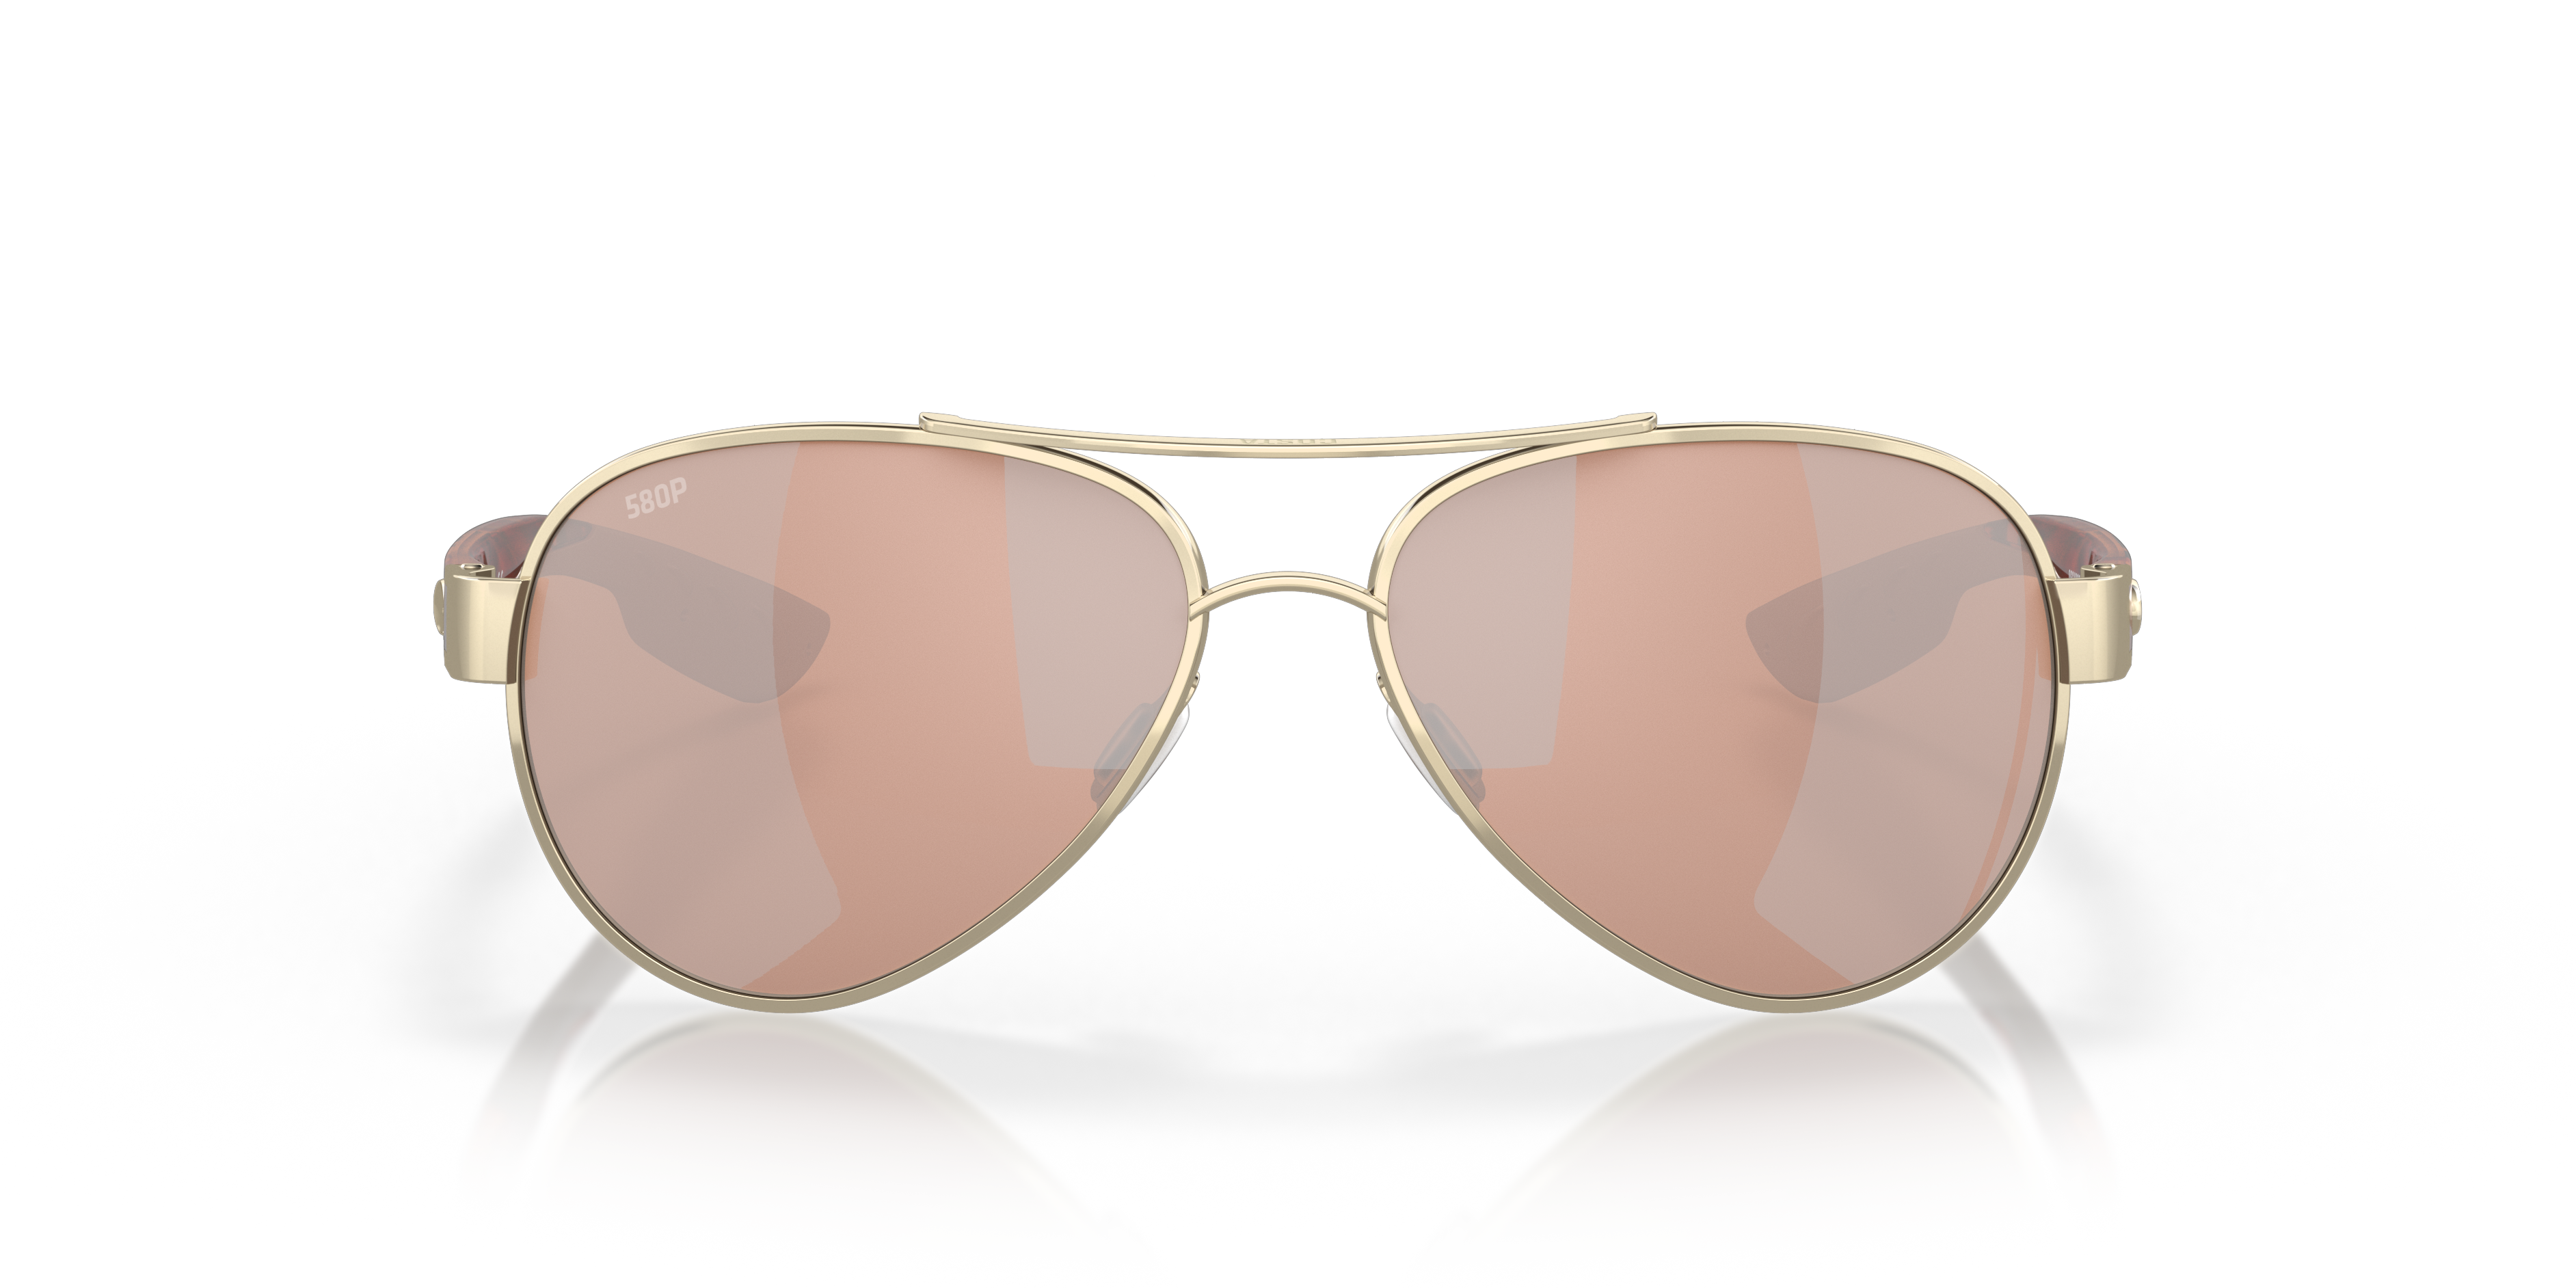 Loreto Polarized Sunglasses in Copper Silver Mirror | Costa Del Mar®